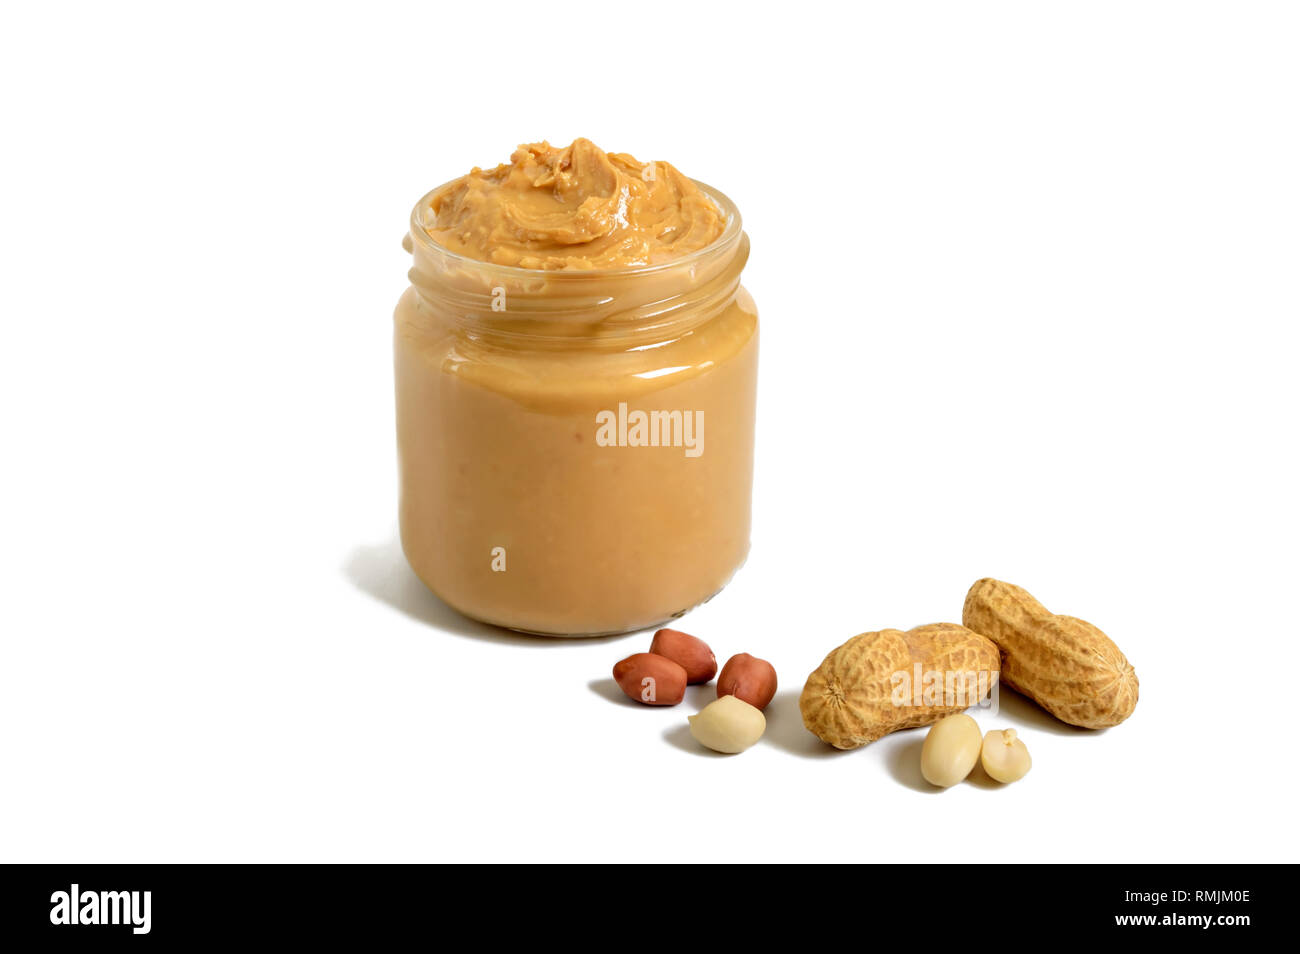 Mr. Peanut Jar Stock Photo - Alamy